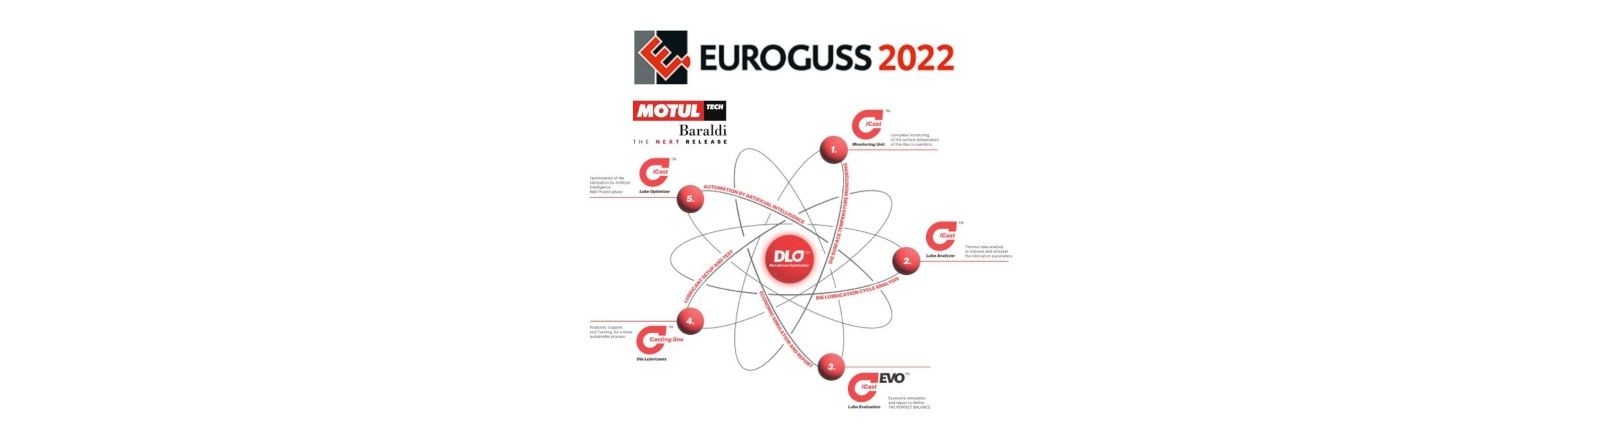 EUROGUSS 2022 – 14TH INTERNATIONAL TRADE FAIR FOR DIE CASTING